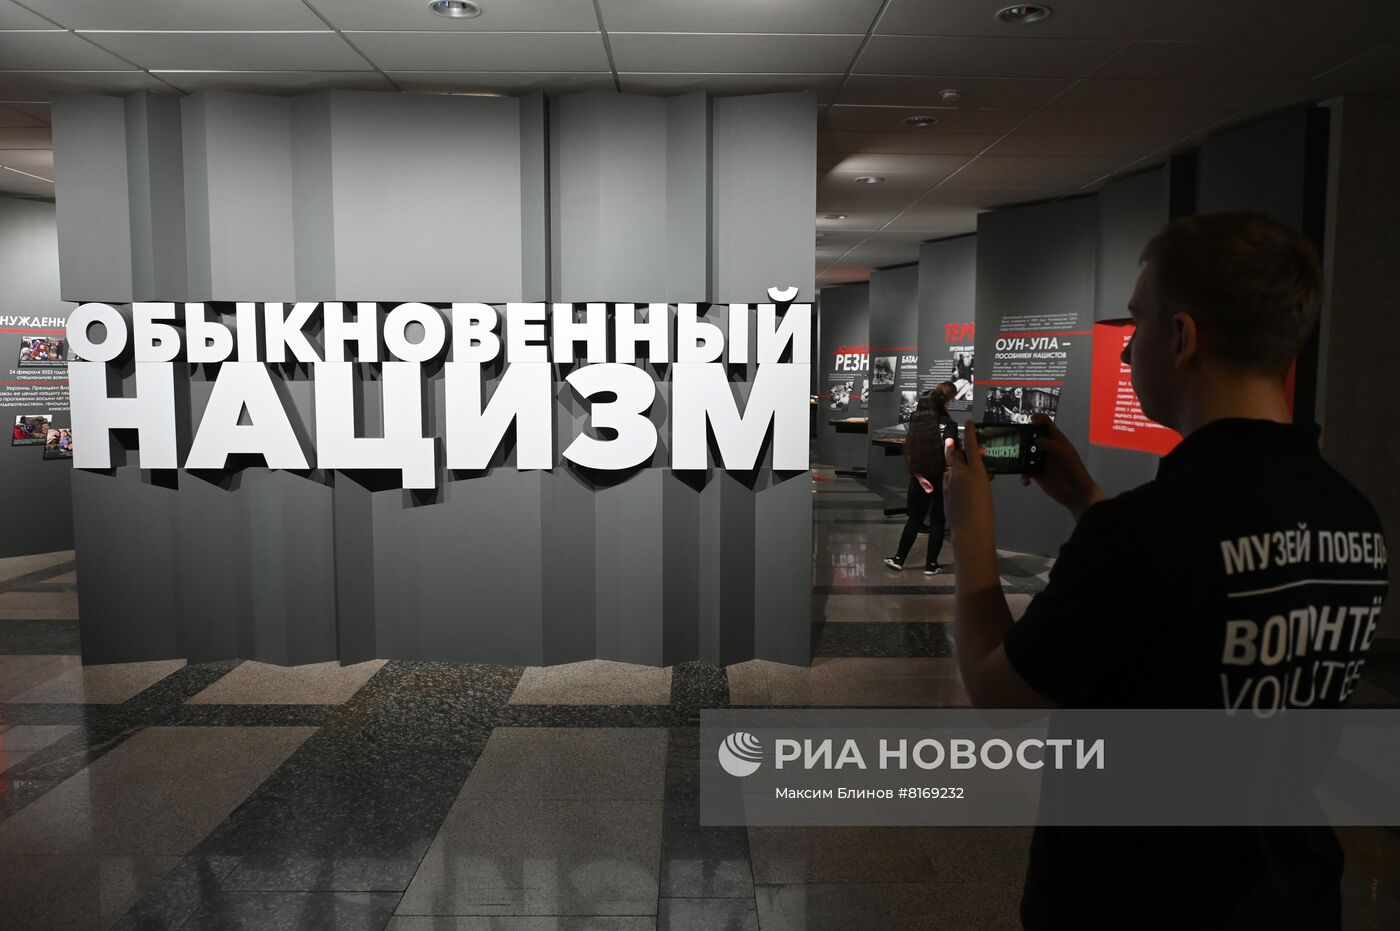 Первый Всероссийский школьный исторический форум "Сила – в правде!"